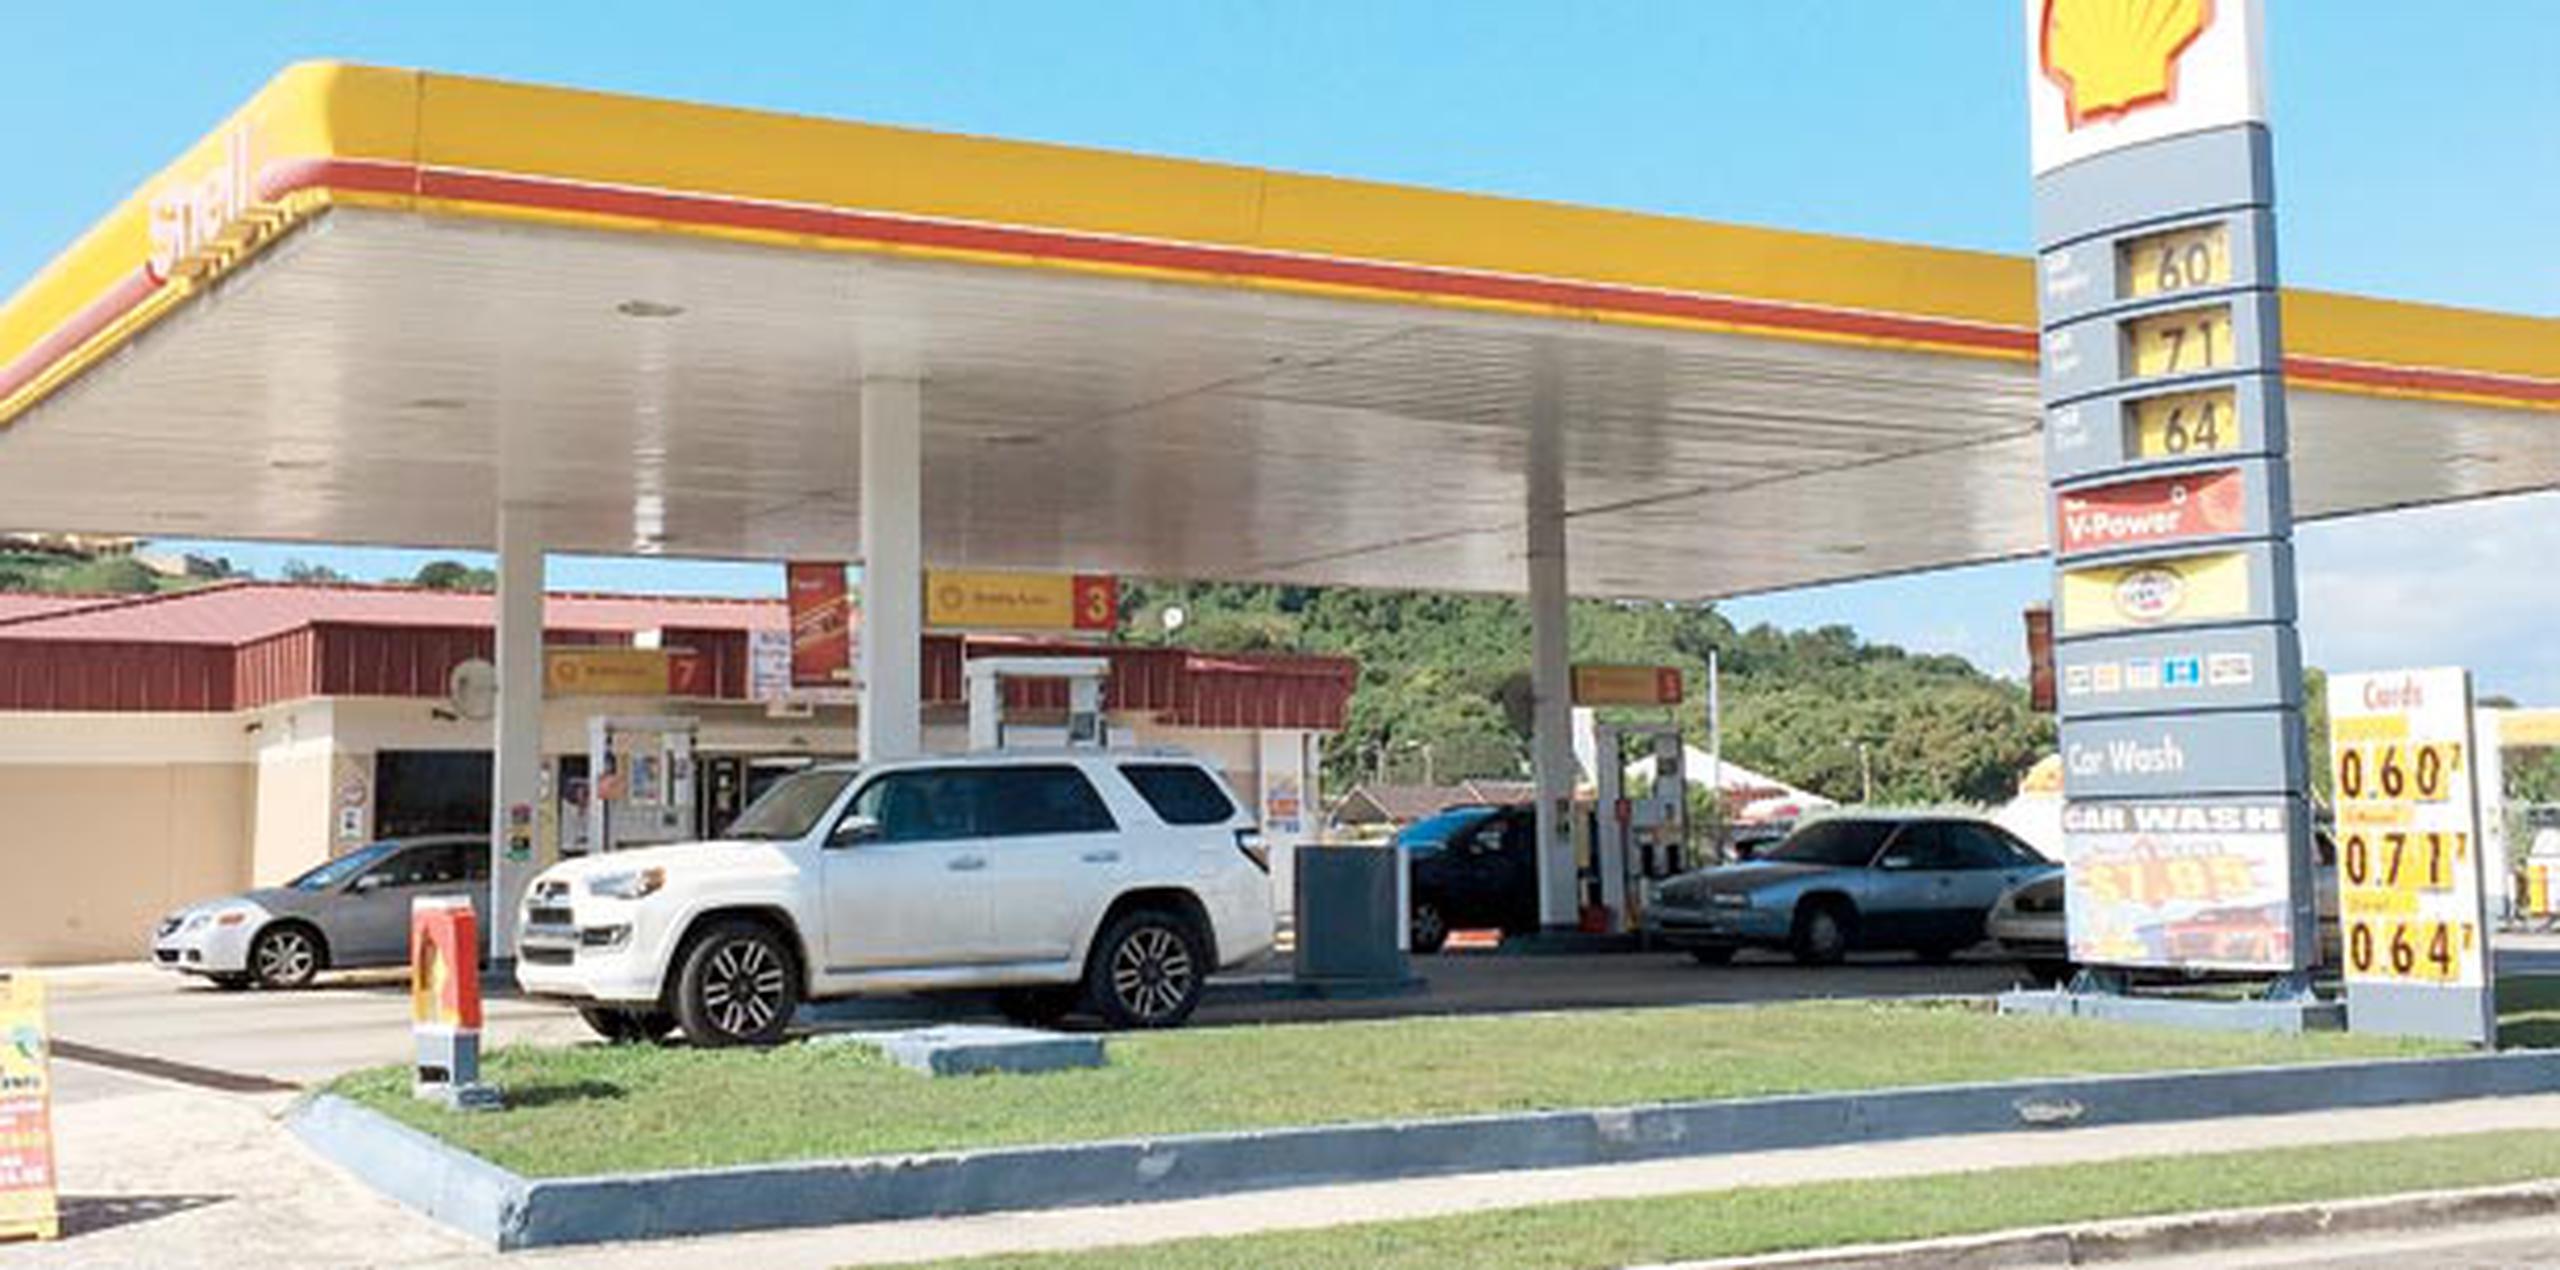 Regresamos a la estación de gasolina Shell en el barrio Coto Laurel en Ponce, donde se vendió el boleto millonario. (darisabel.texidor@gfrmedia.com)